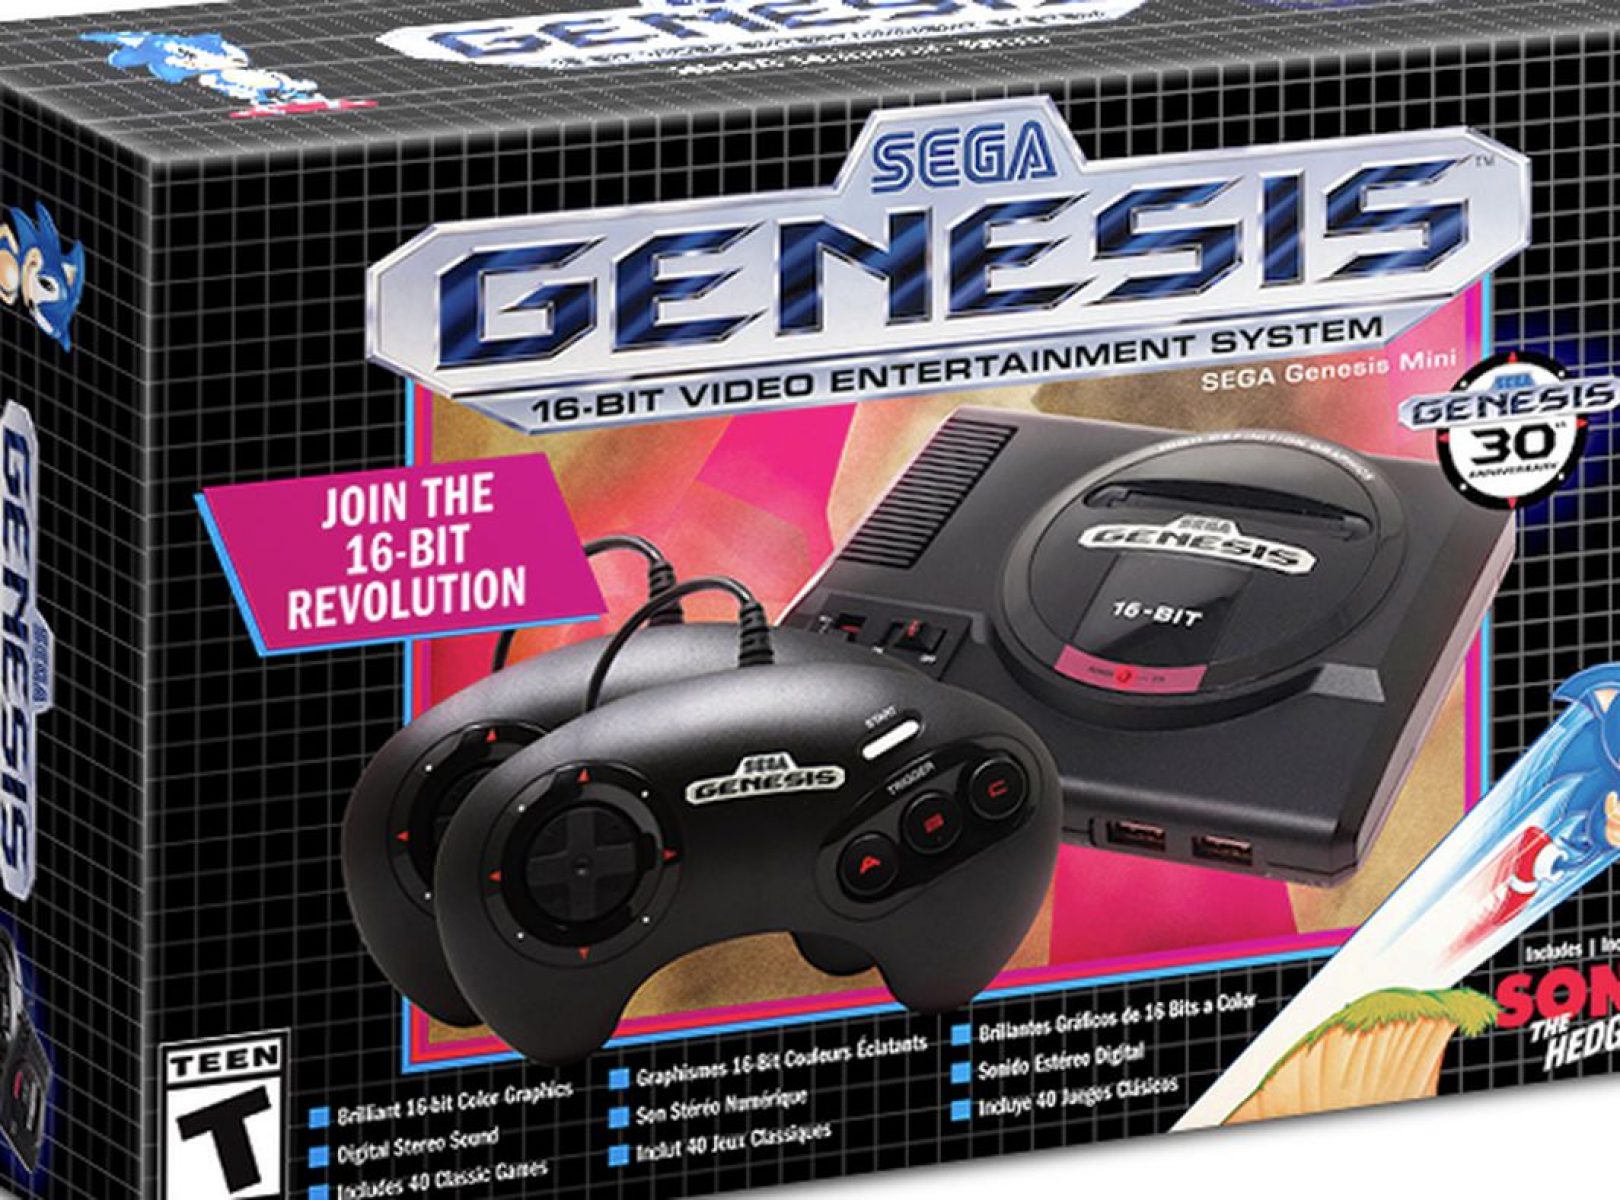 sega genesis mini games download free